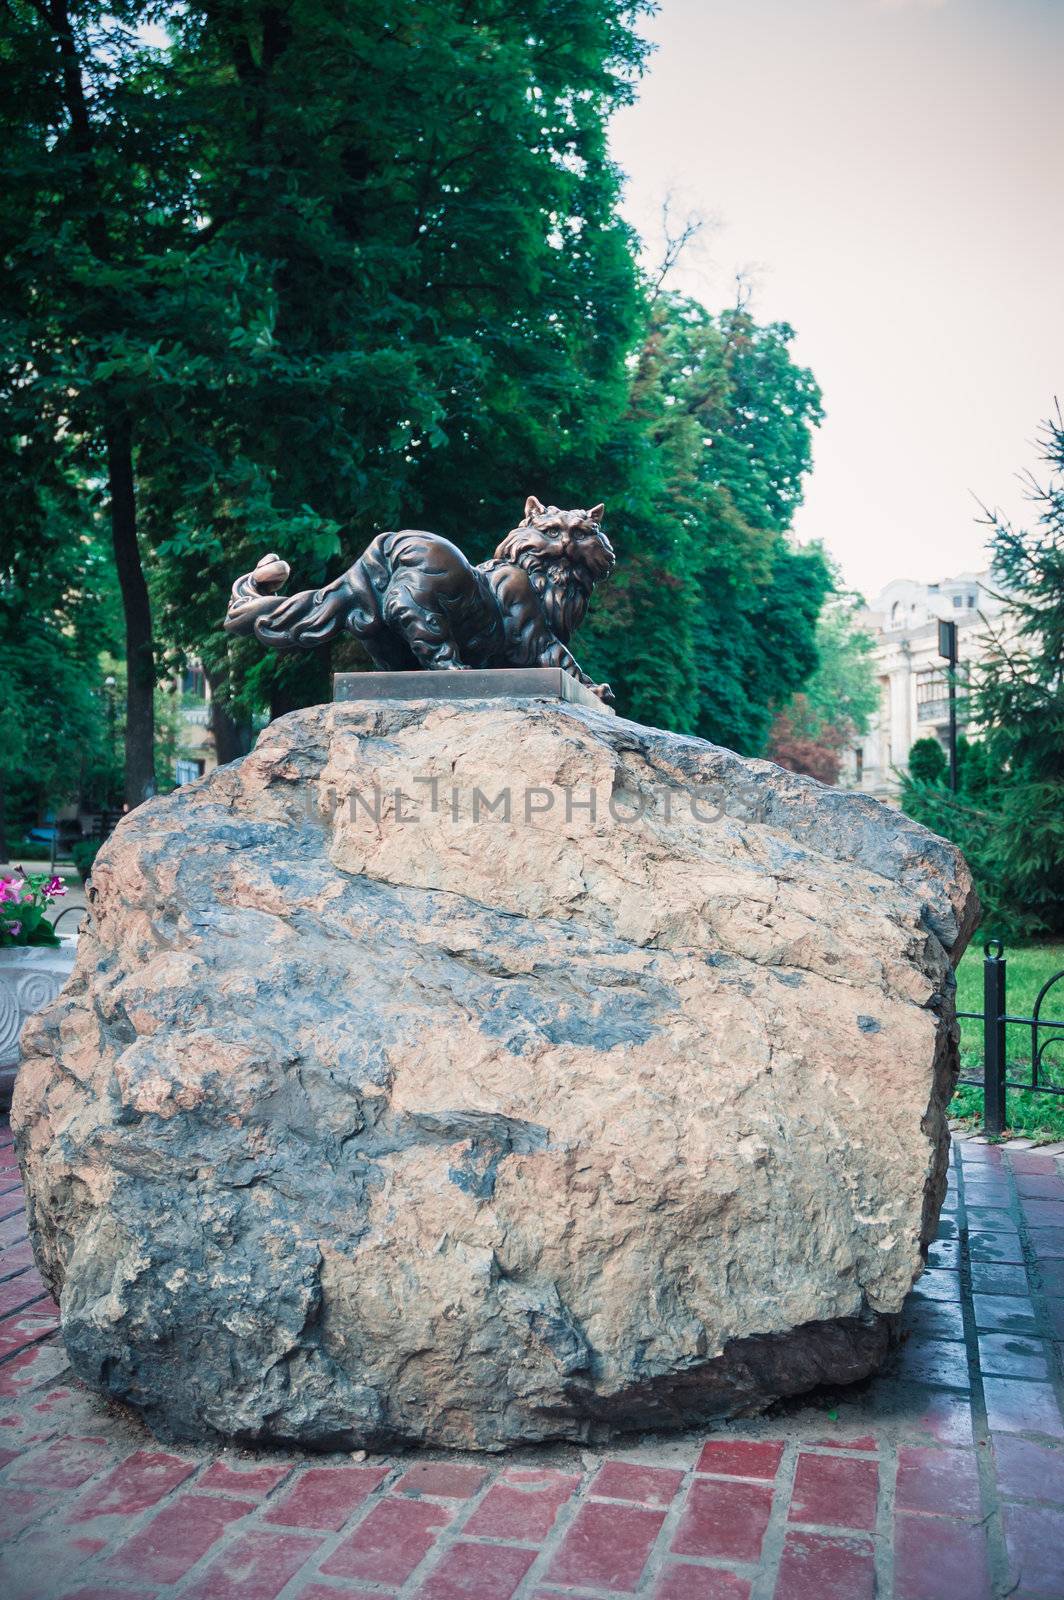 Cat monument in Kiev by nvelichko